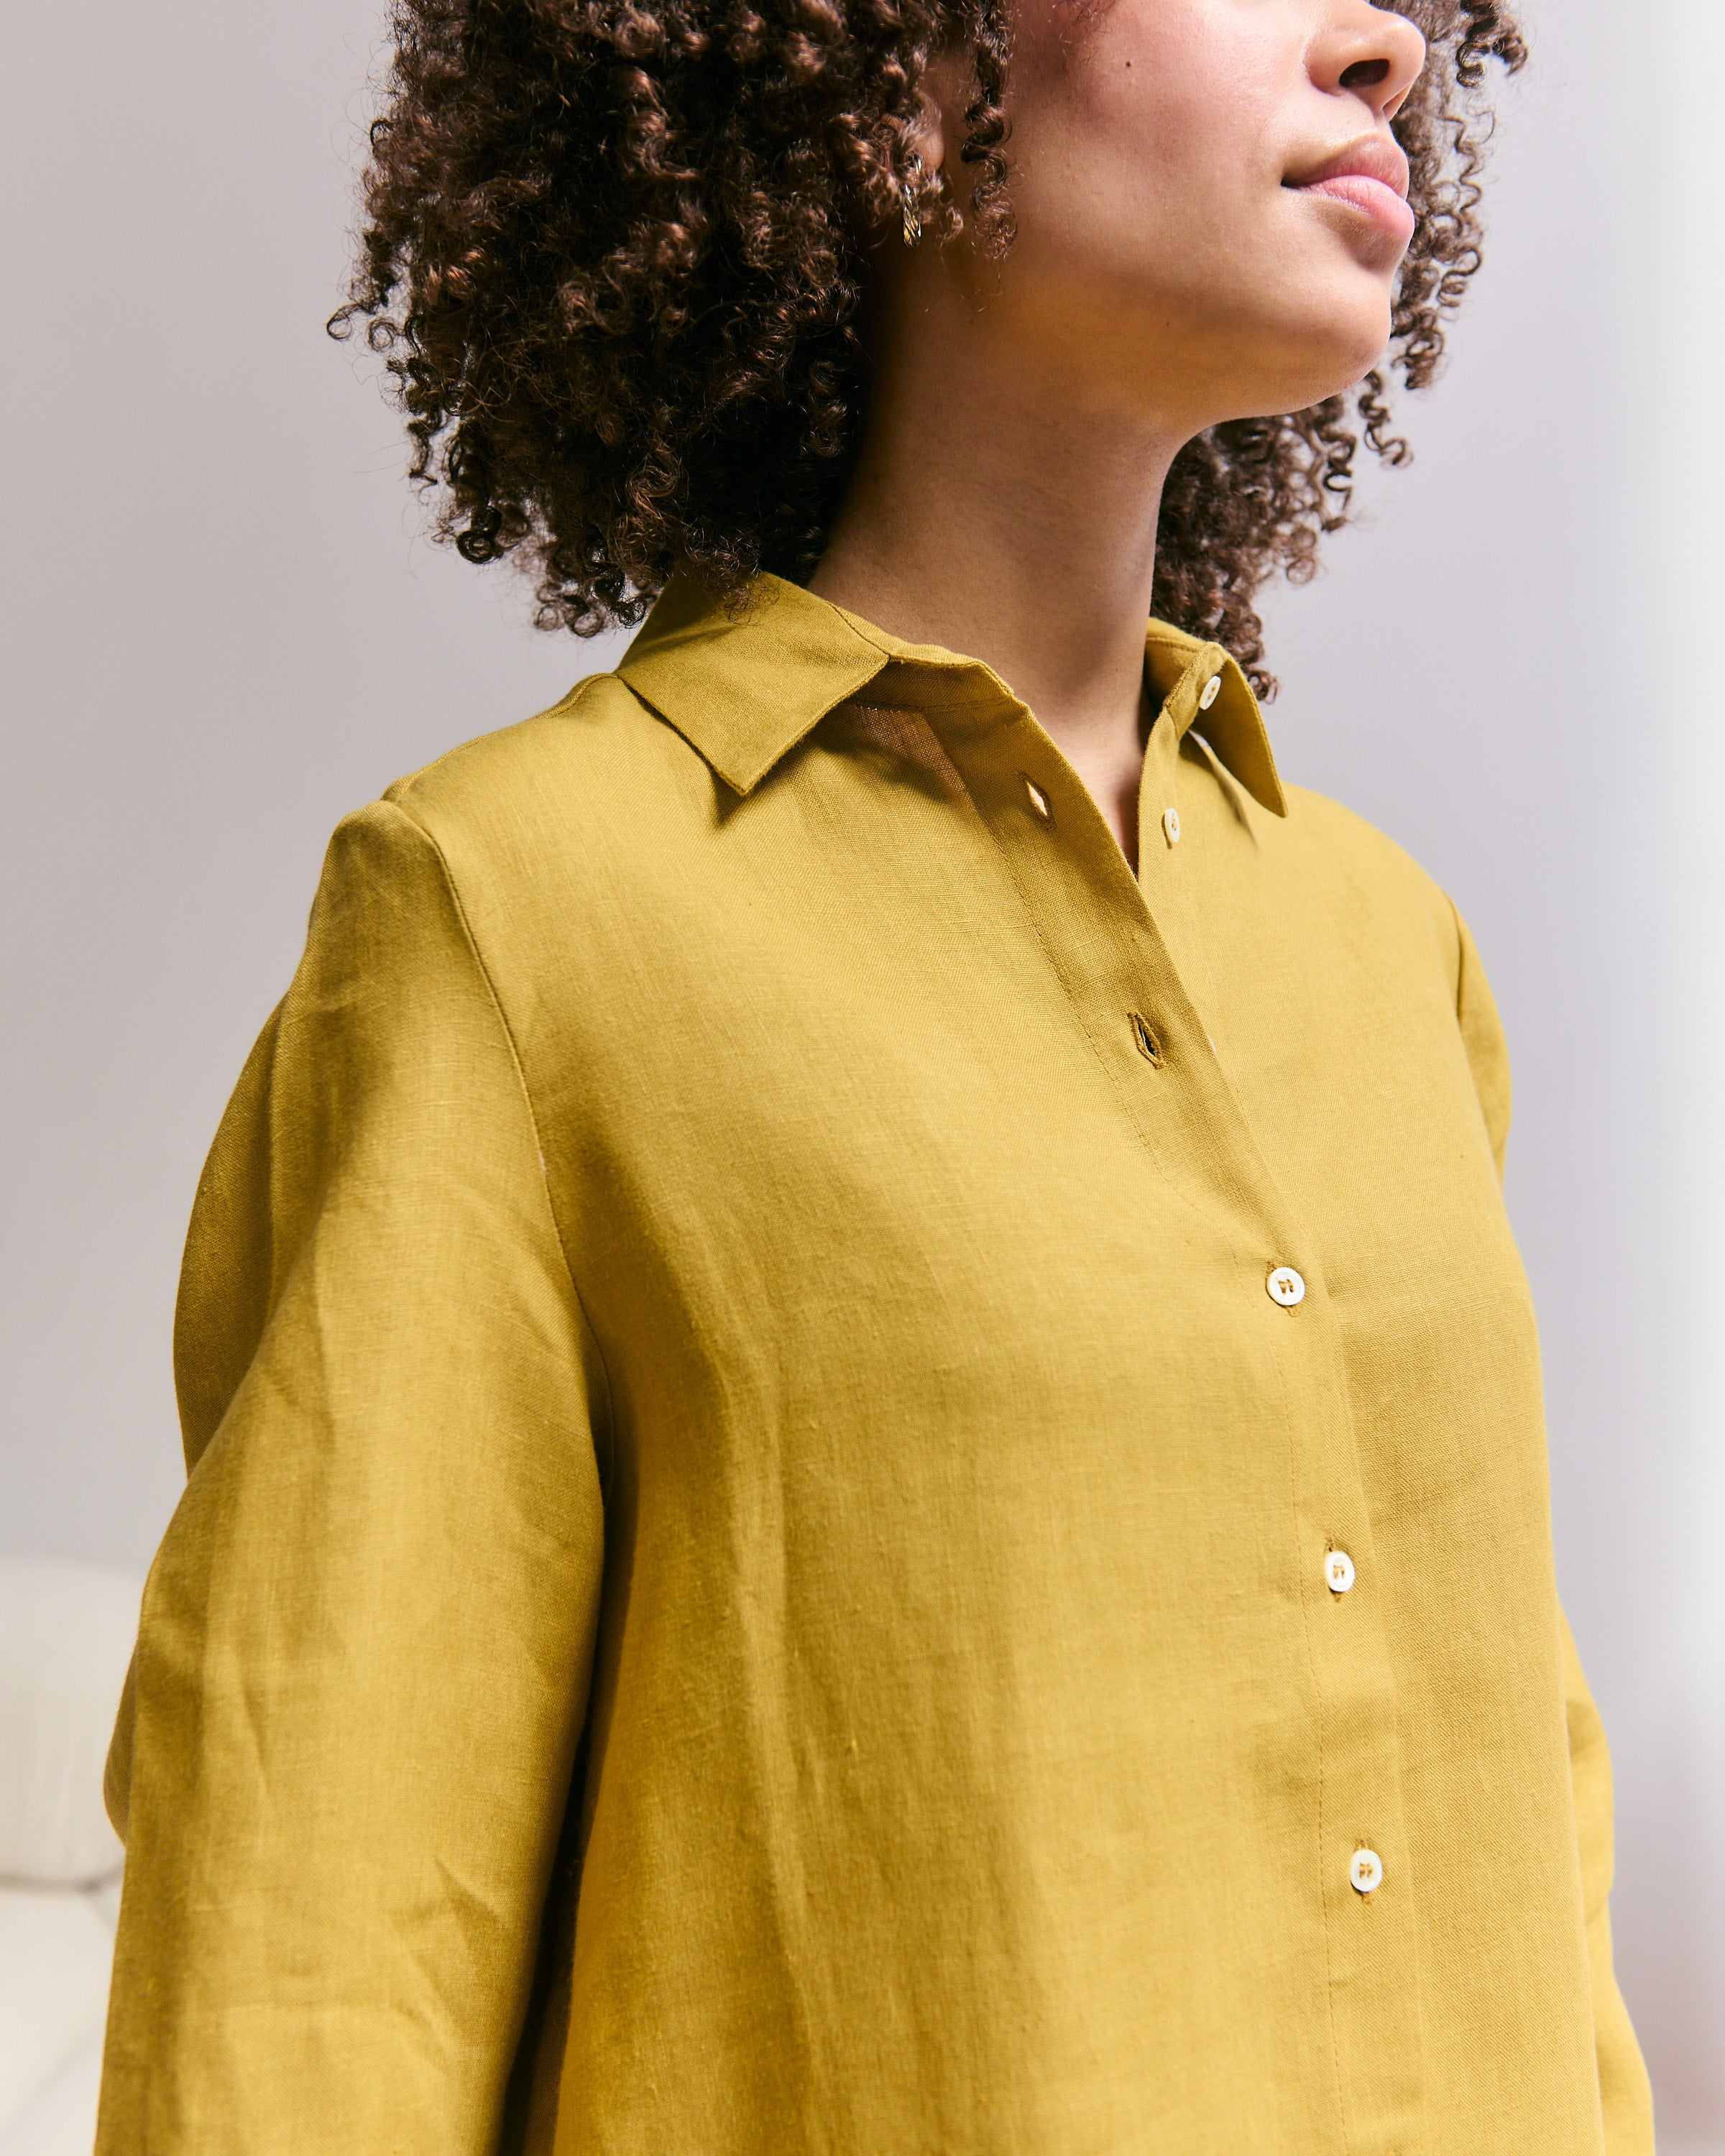 Detail of a comfortable and light mustard jellow Belgian linen shirtdress.